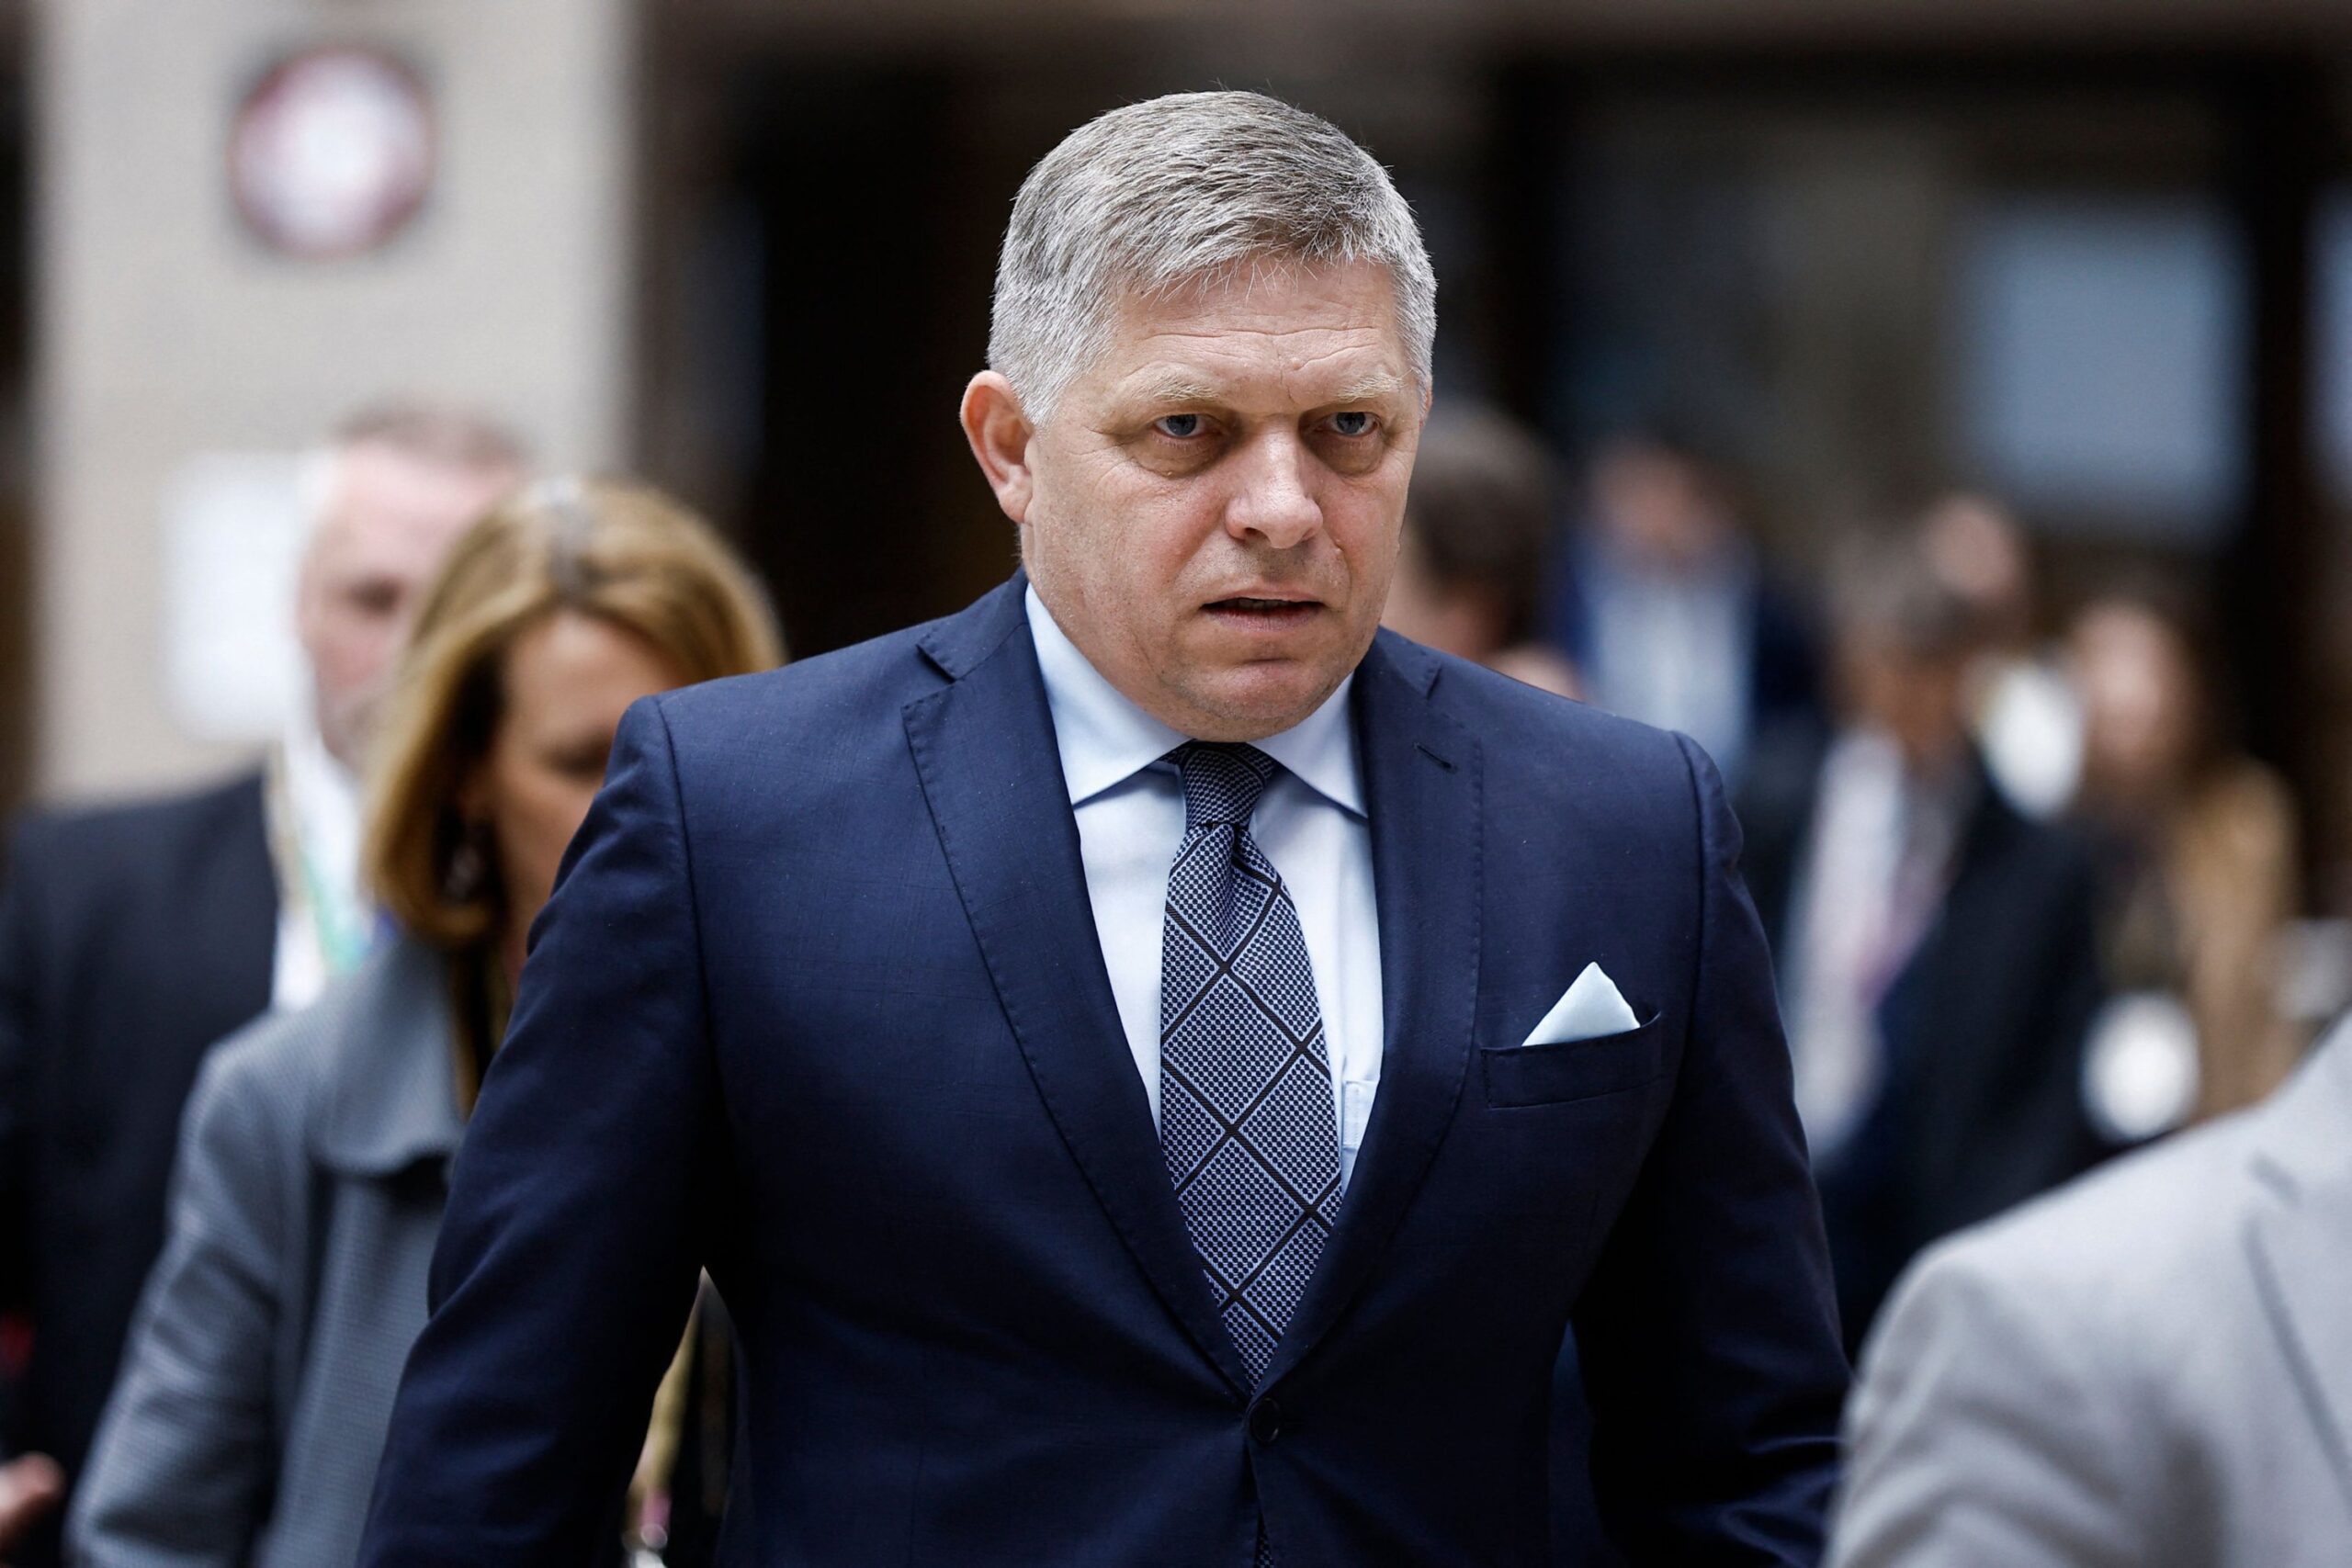 Konfirmohet zyrtarisht: Kryeministri sllovak Fico, jashtë rreziku për jetën!